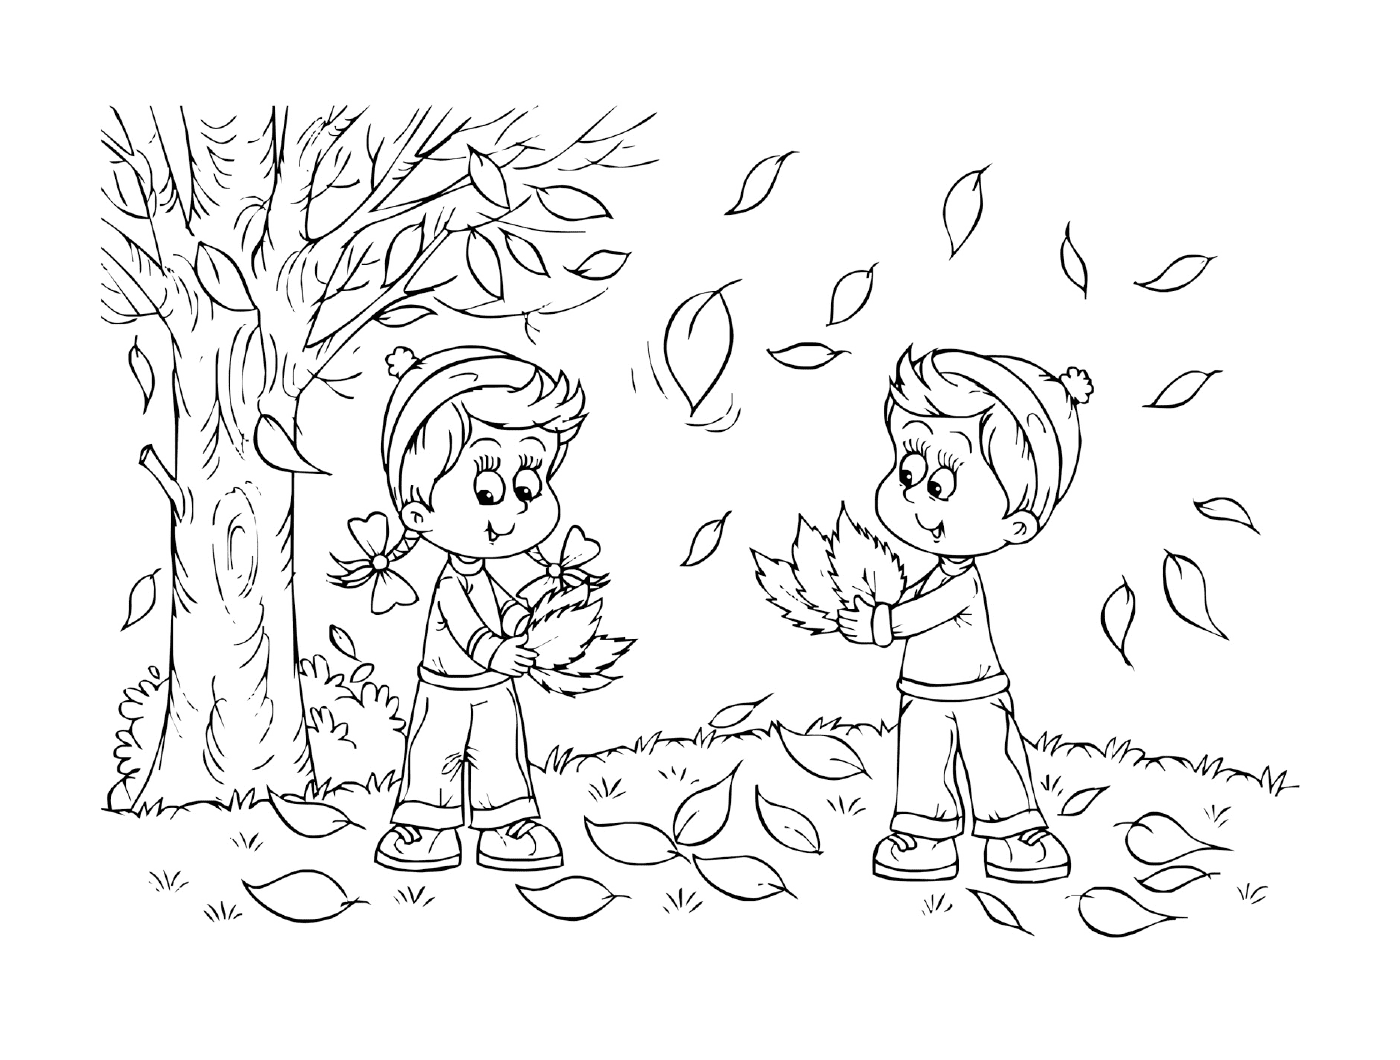  Zwei Kinder spielen mit Blättern in einem Park 